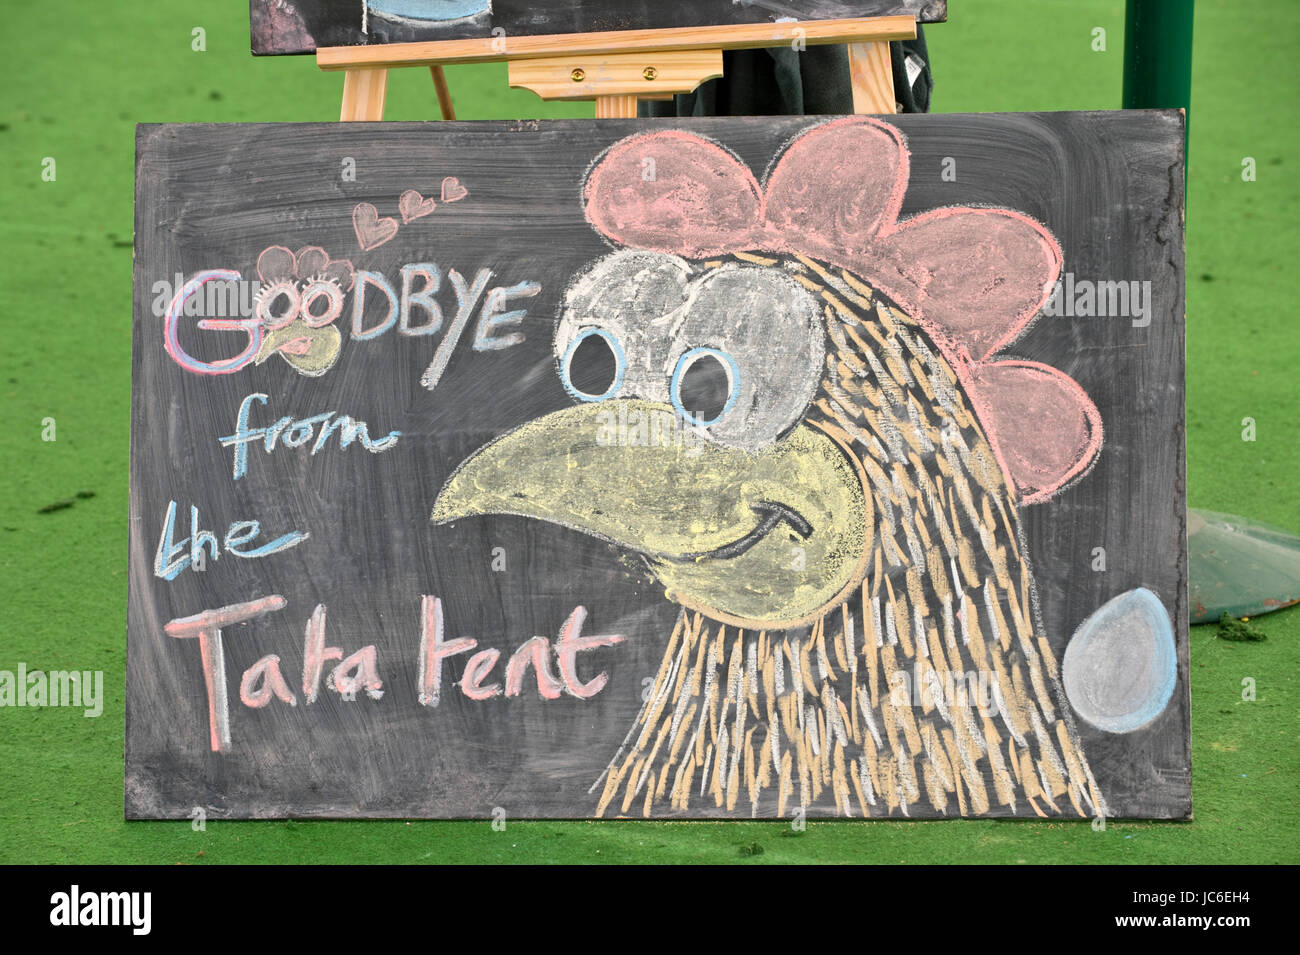 Addio da Tata tenda sulla lavagna evento finale a Hay Festival della letteratura e delle Arti 2017 Hay-on-Wye Powys Wales UK Foto Stock